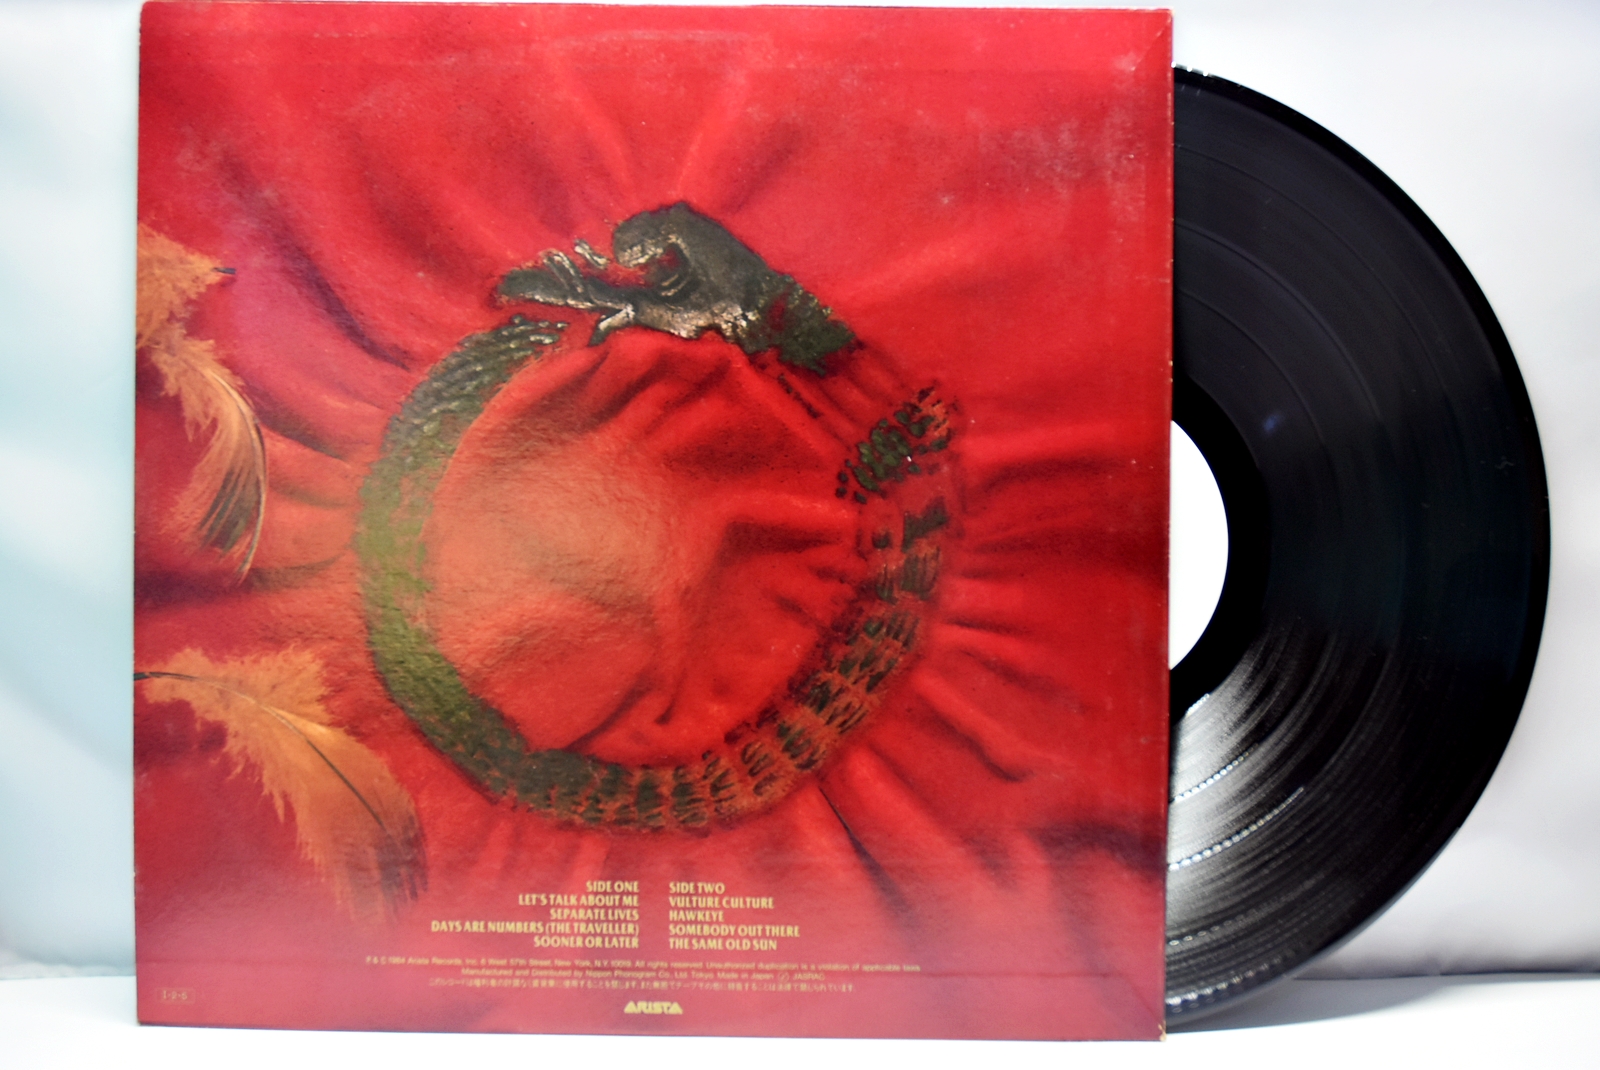 The Alan Parsons Project [알란 파슨스 프로젝트] - Vulture Culture (Promo) - 중고 수입 오리지널 아날로그 LP